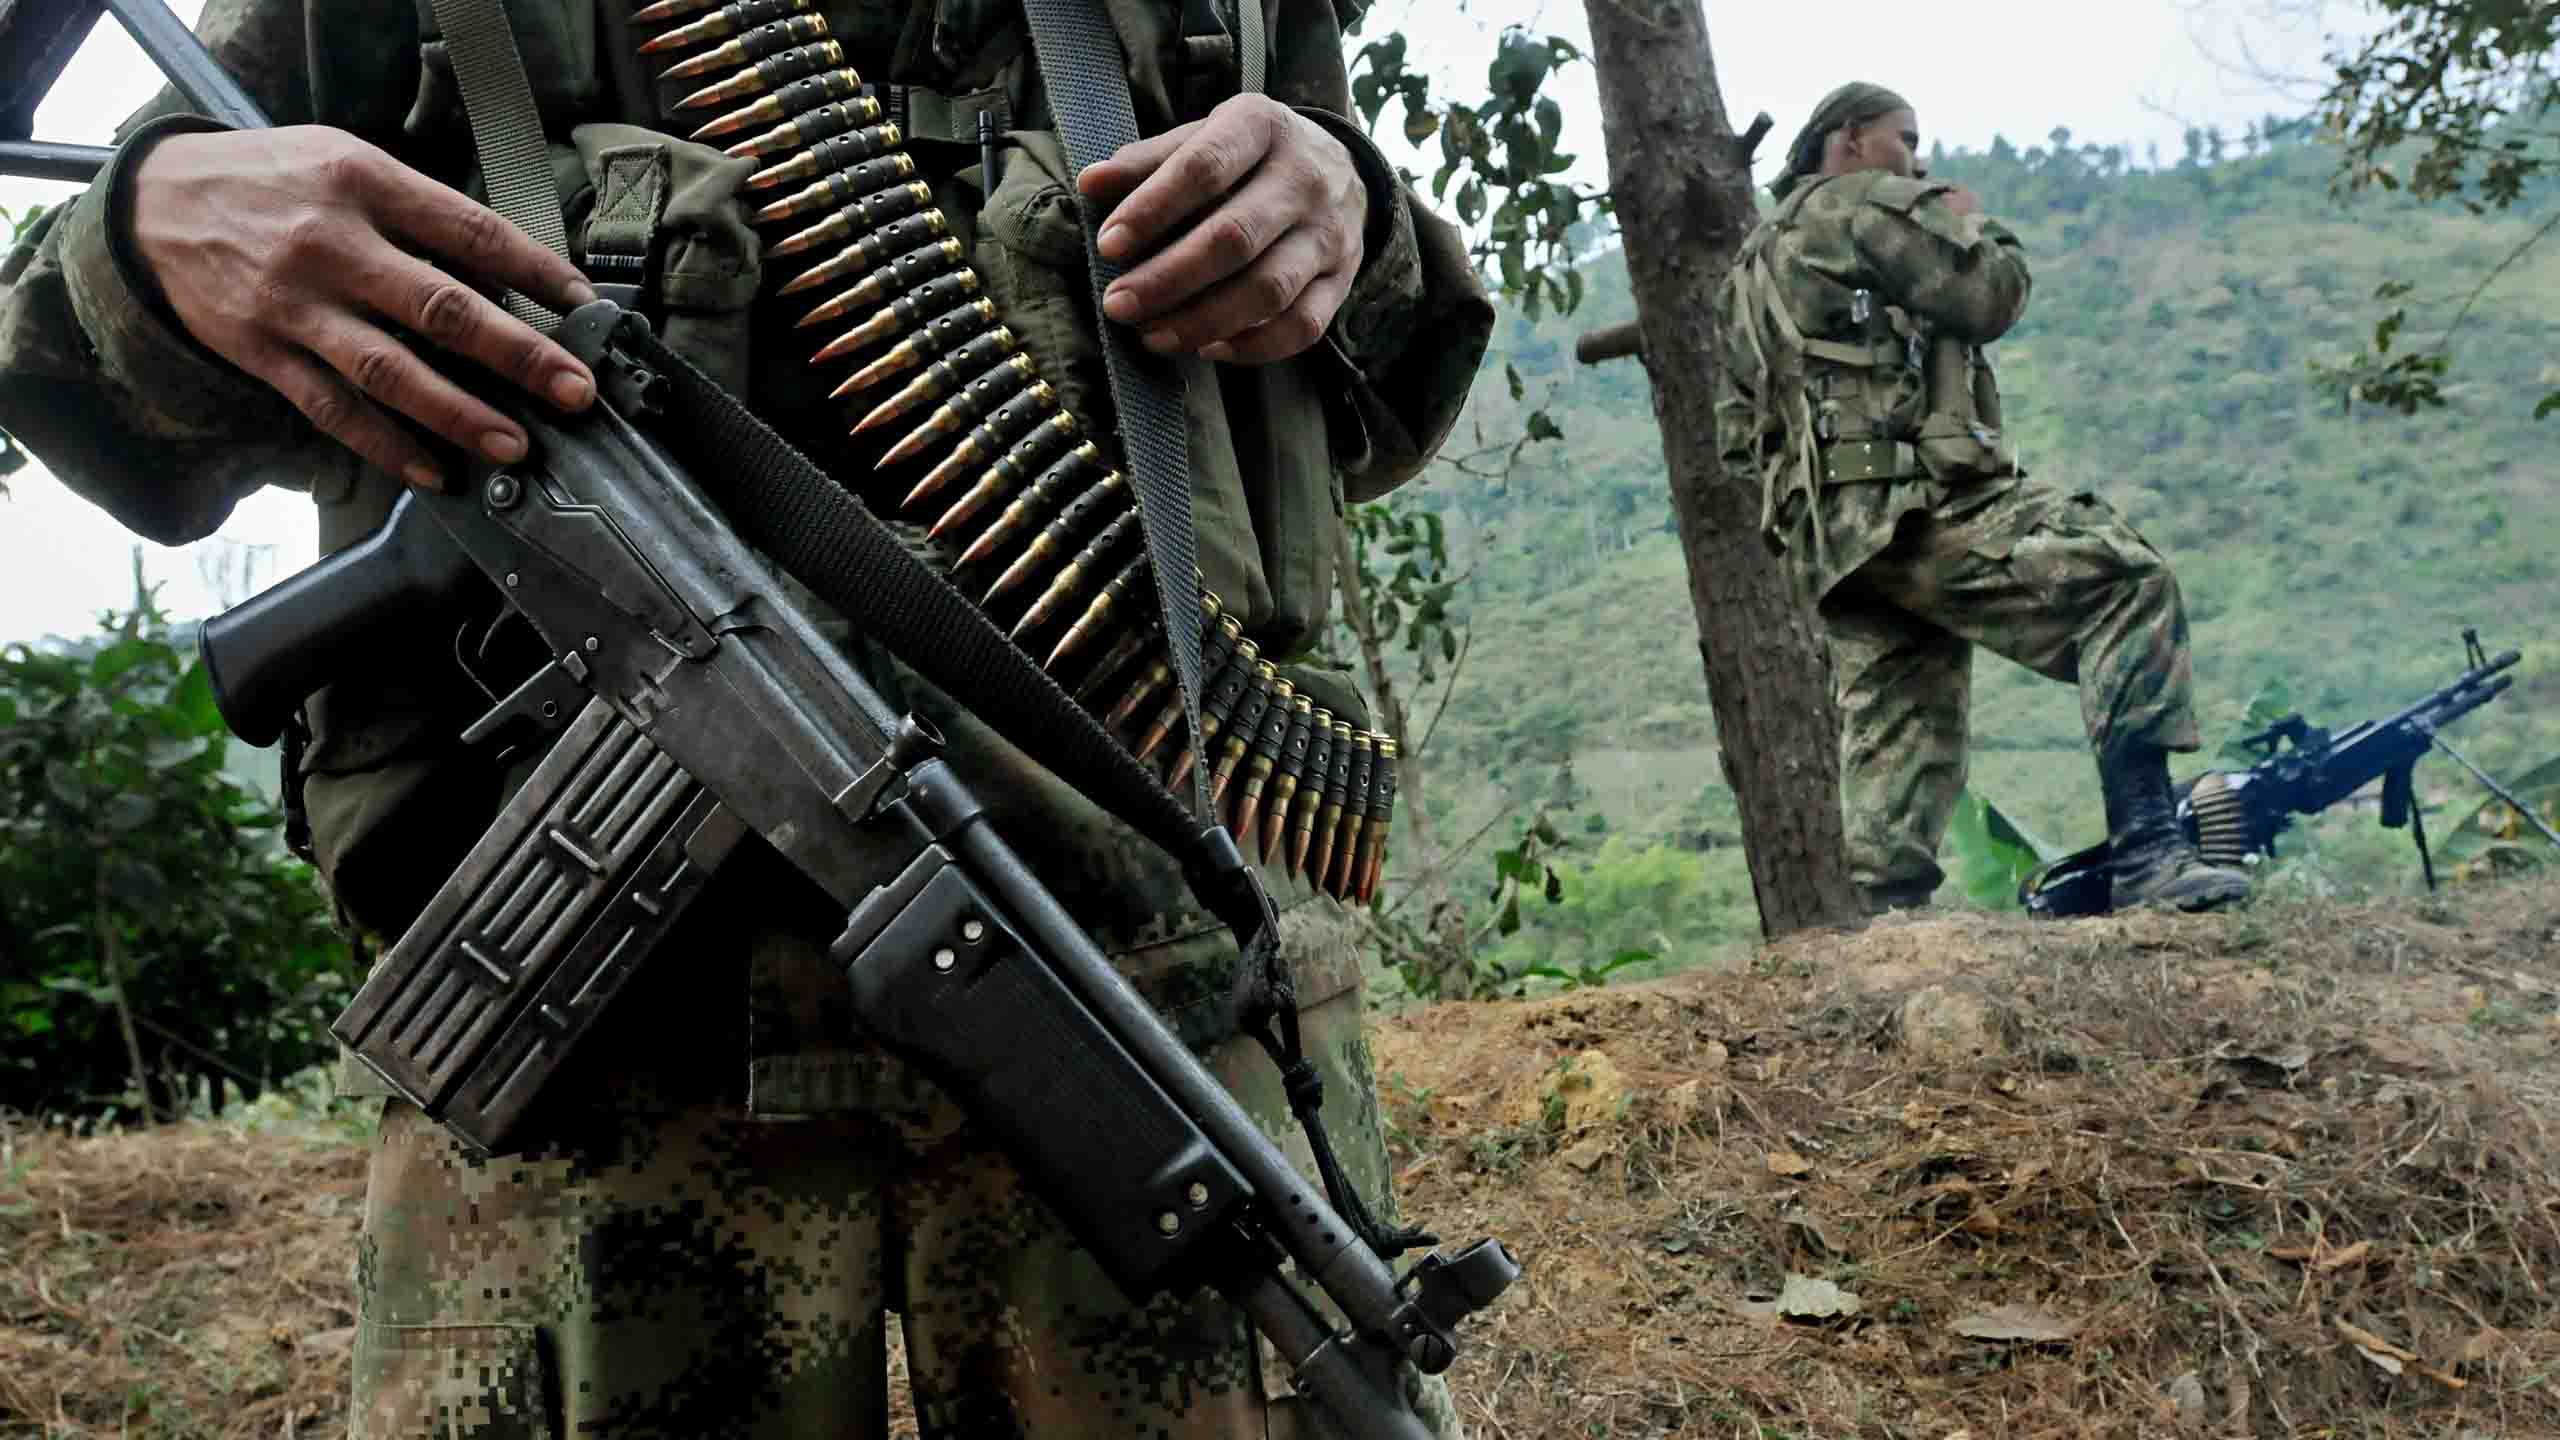 El canciller venezolano rechaza las irregularidades que se registran en la frontera colombiana por grupos armados